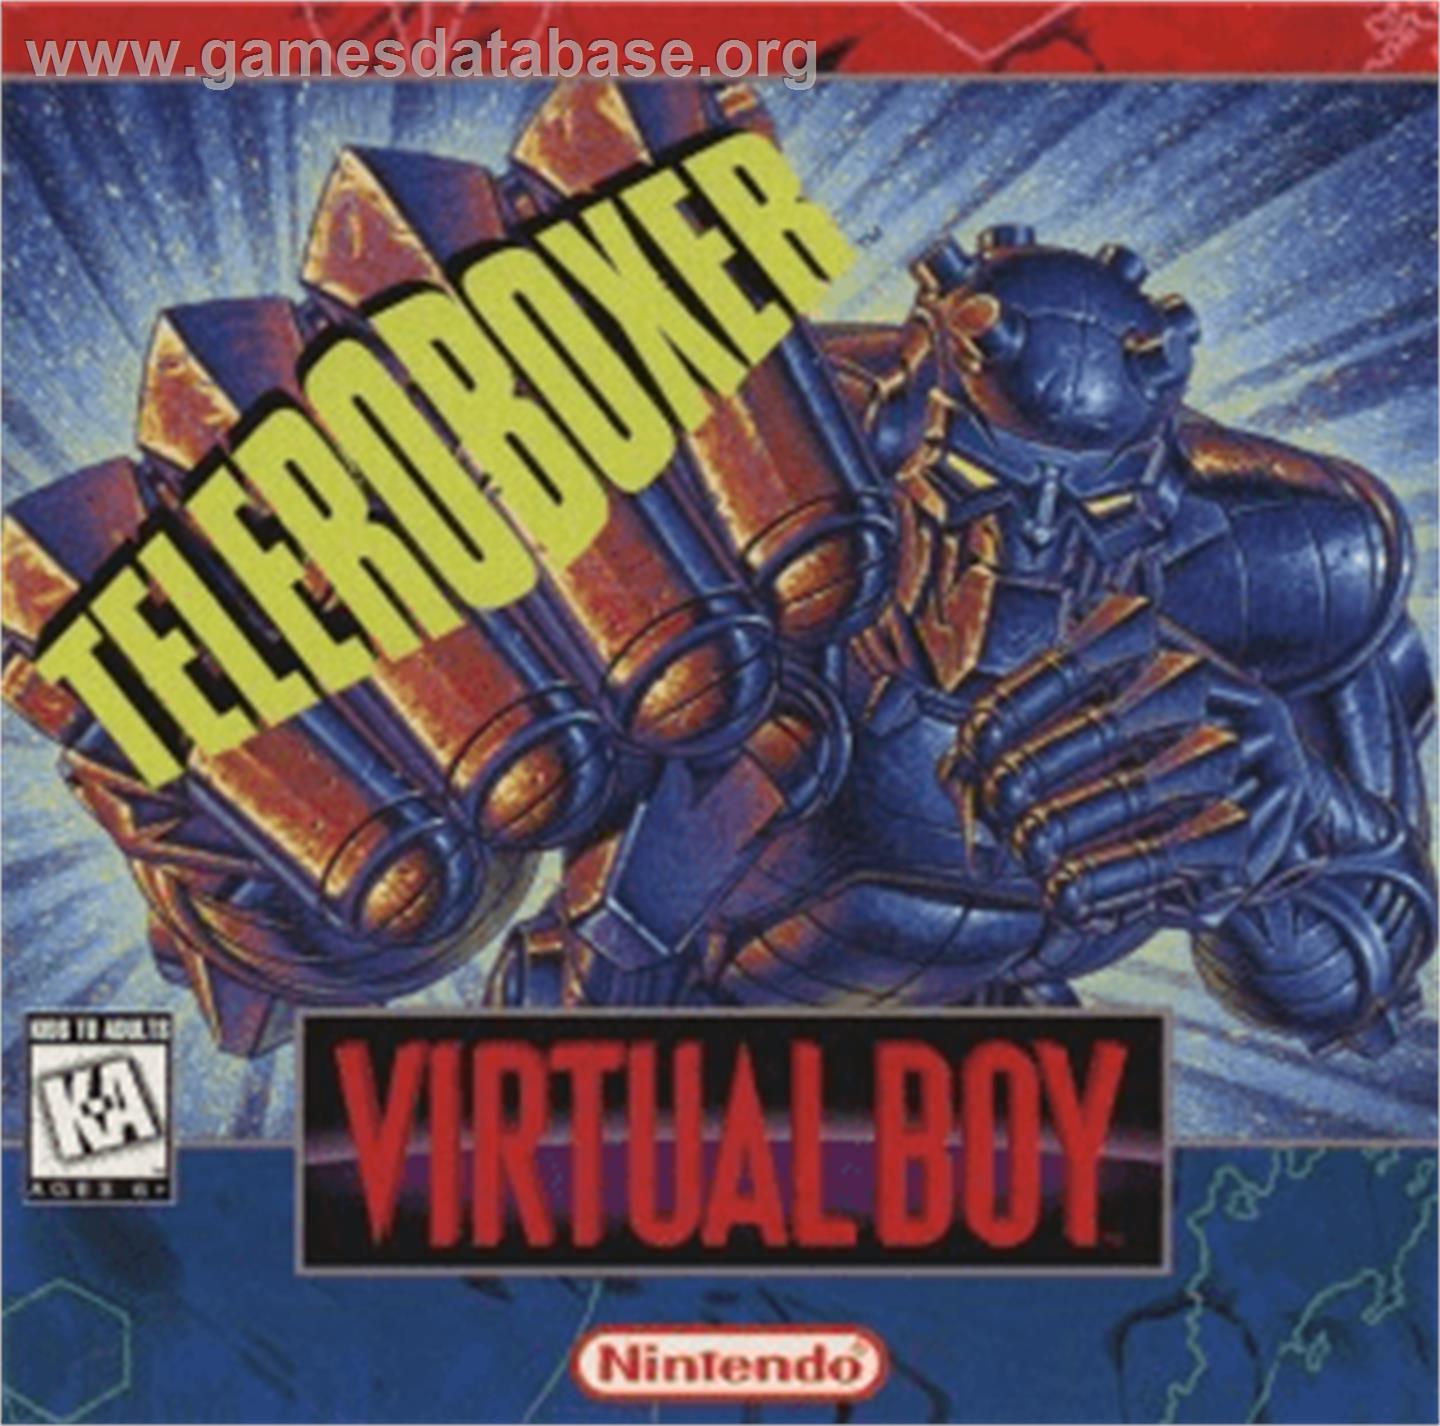 Teleroboxer - Nintendo Virtual Boy - Artwork - Box